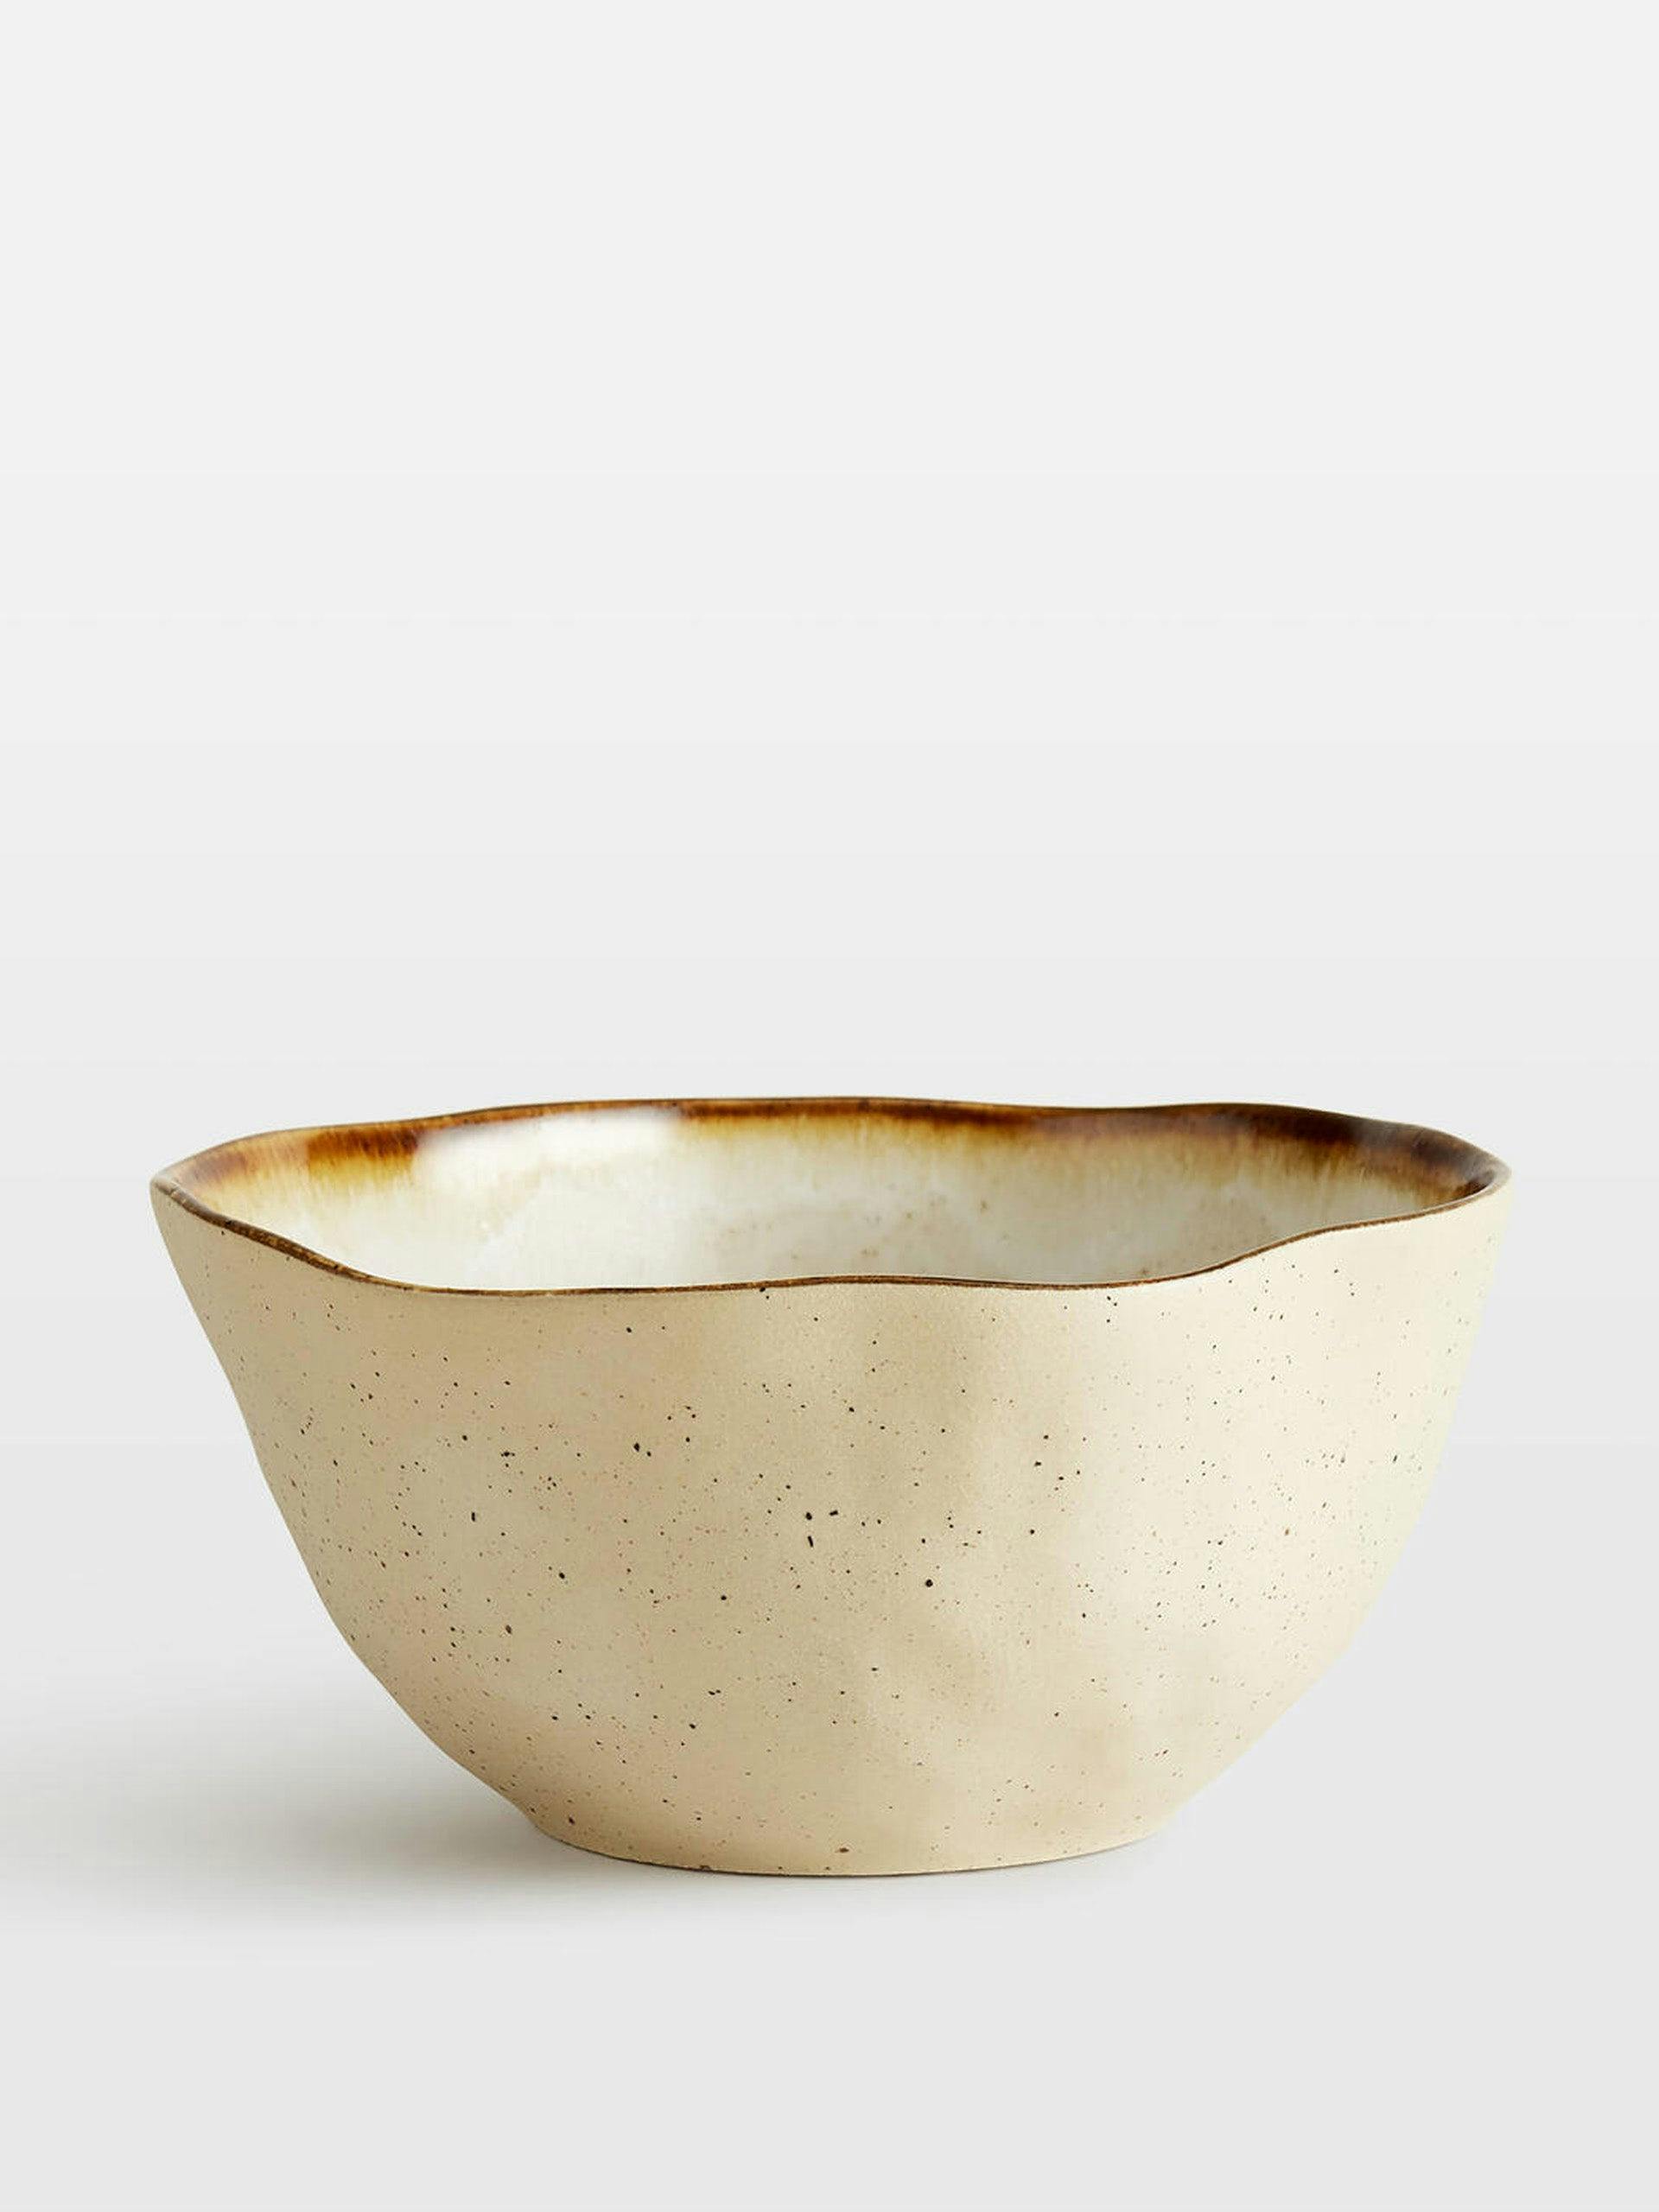 Emden stoneware cereal bowls (set of 4)